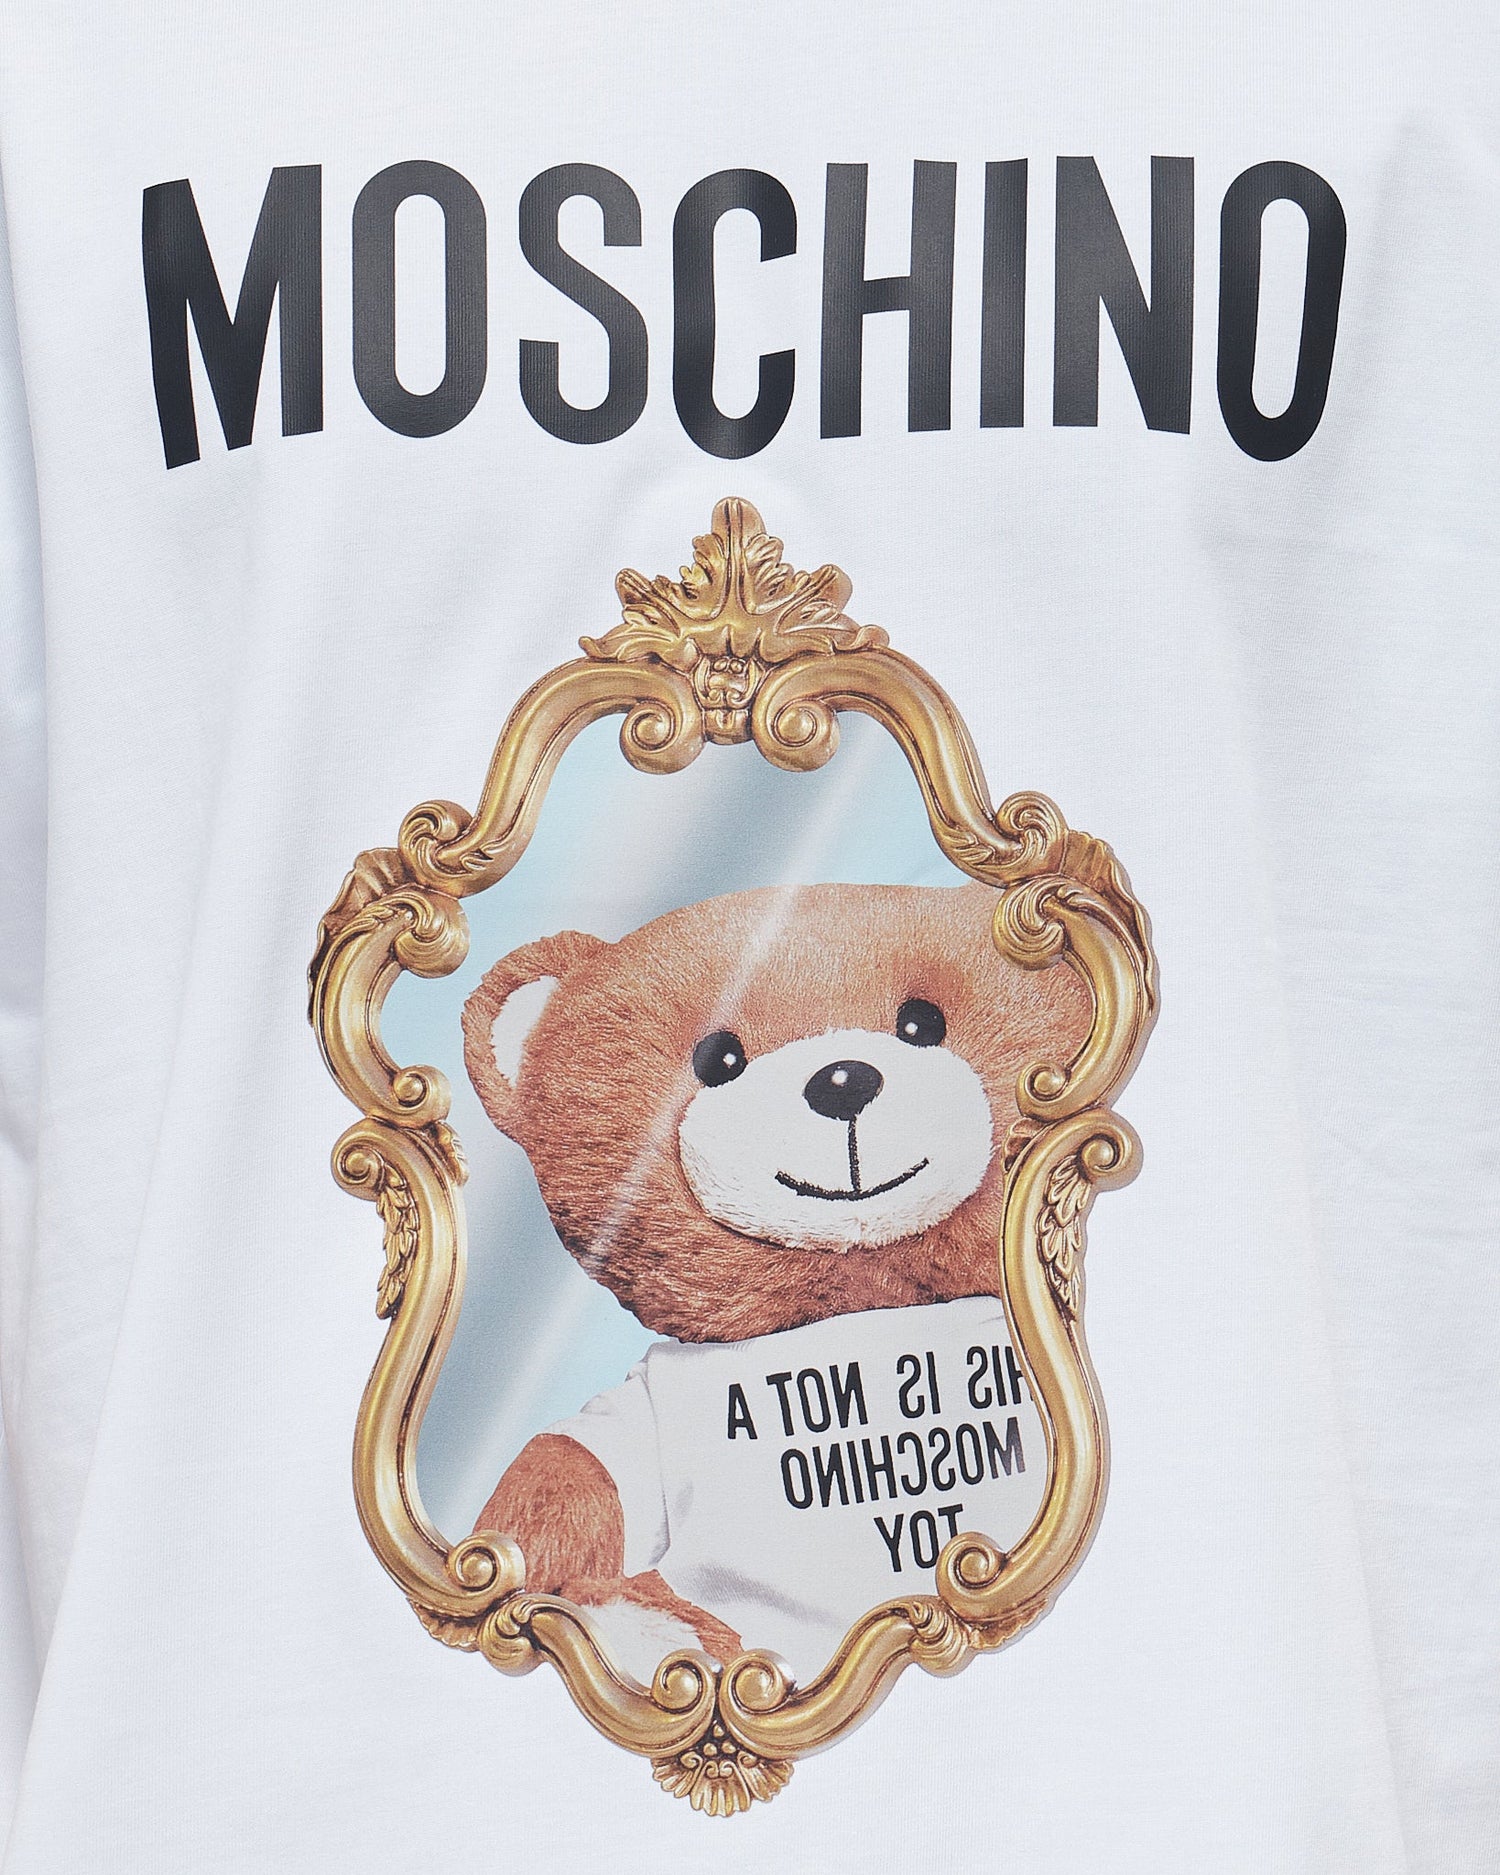 MOI OUTFIT-Mirror Teddy Bear Unisex T-Shirt 18.90